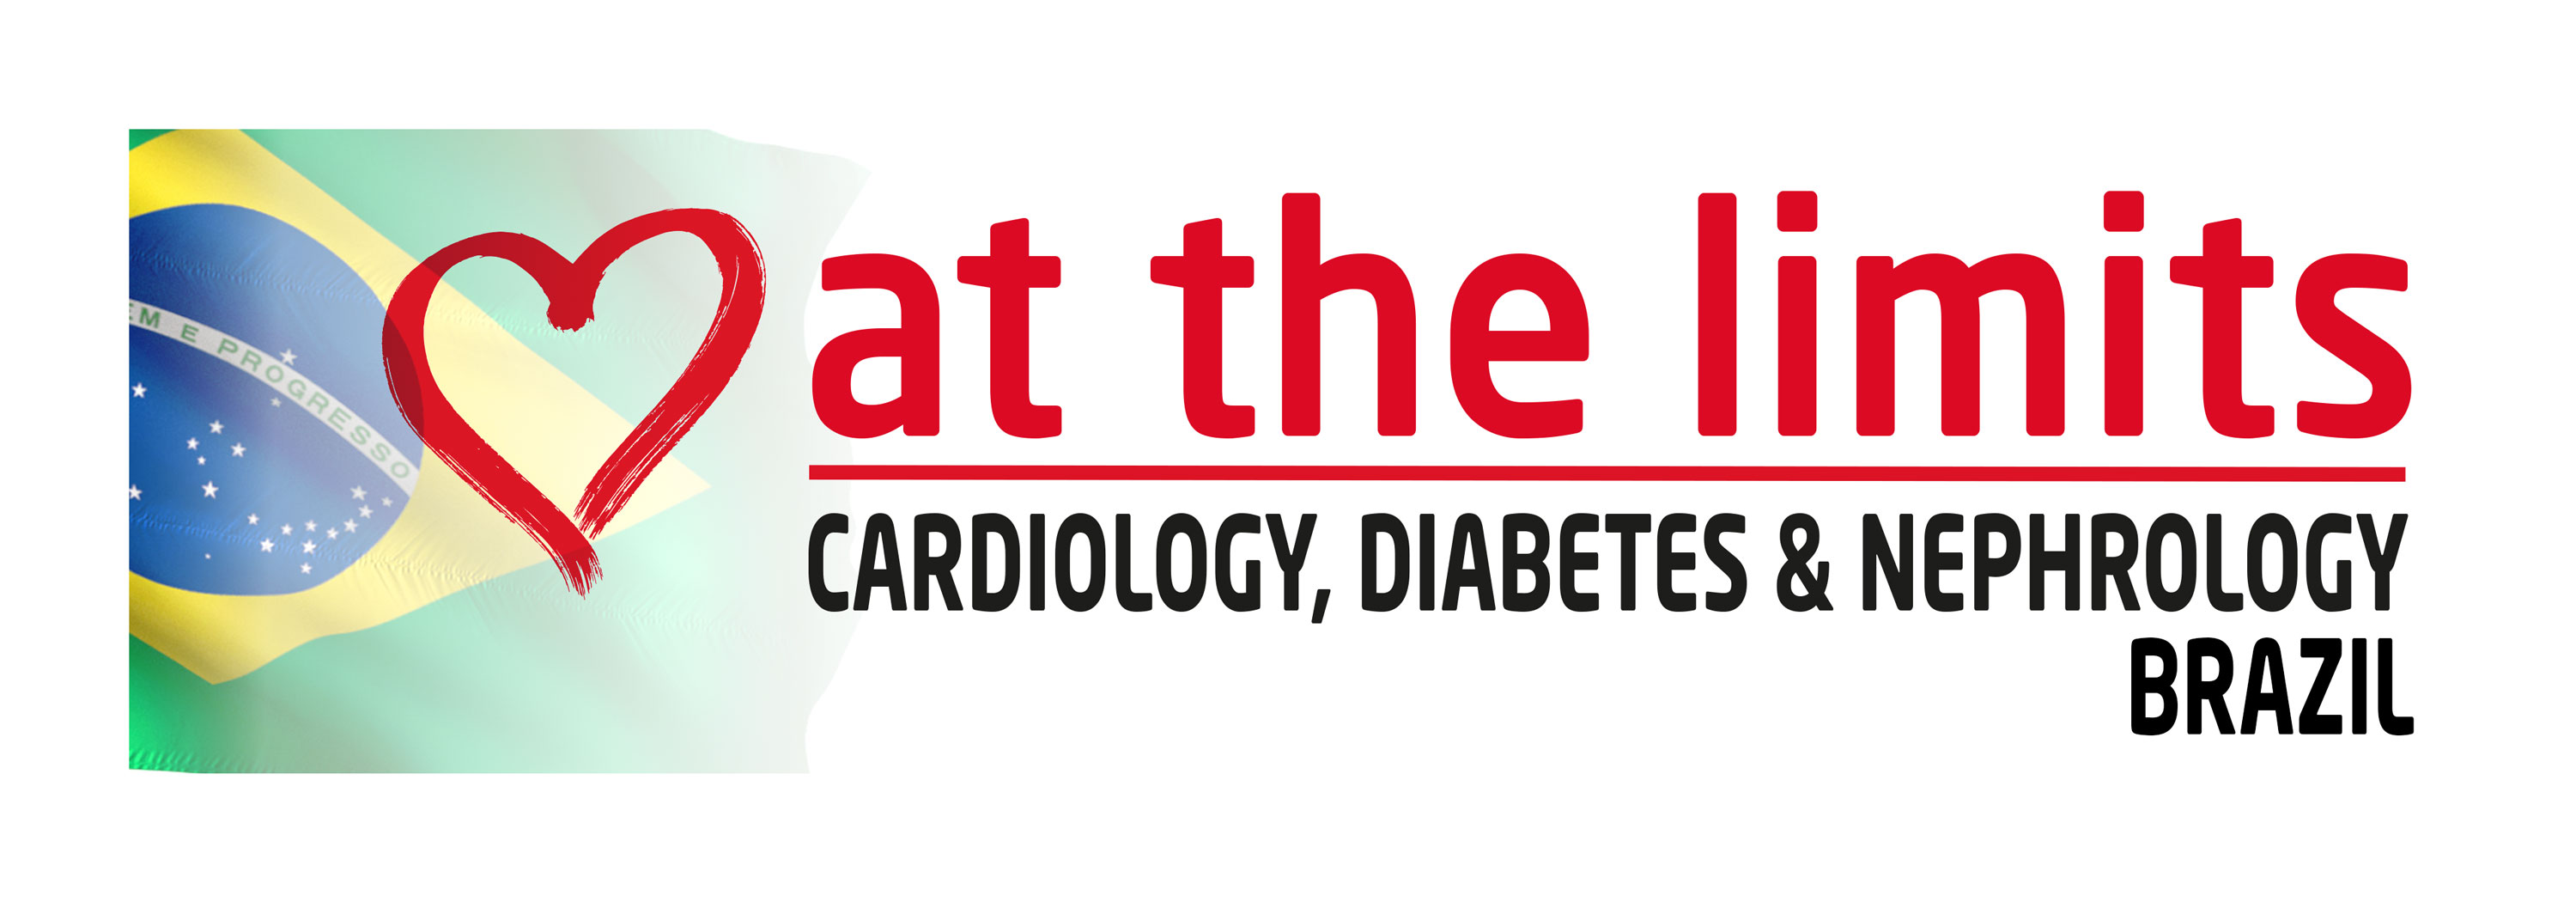 Cardiology, Diabetes & Nephrology at the Limits Brazil